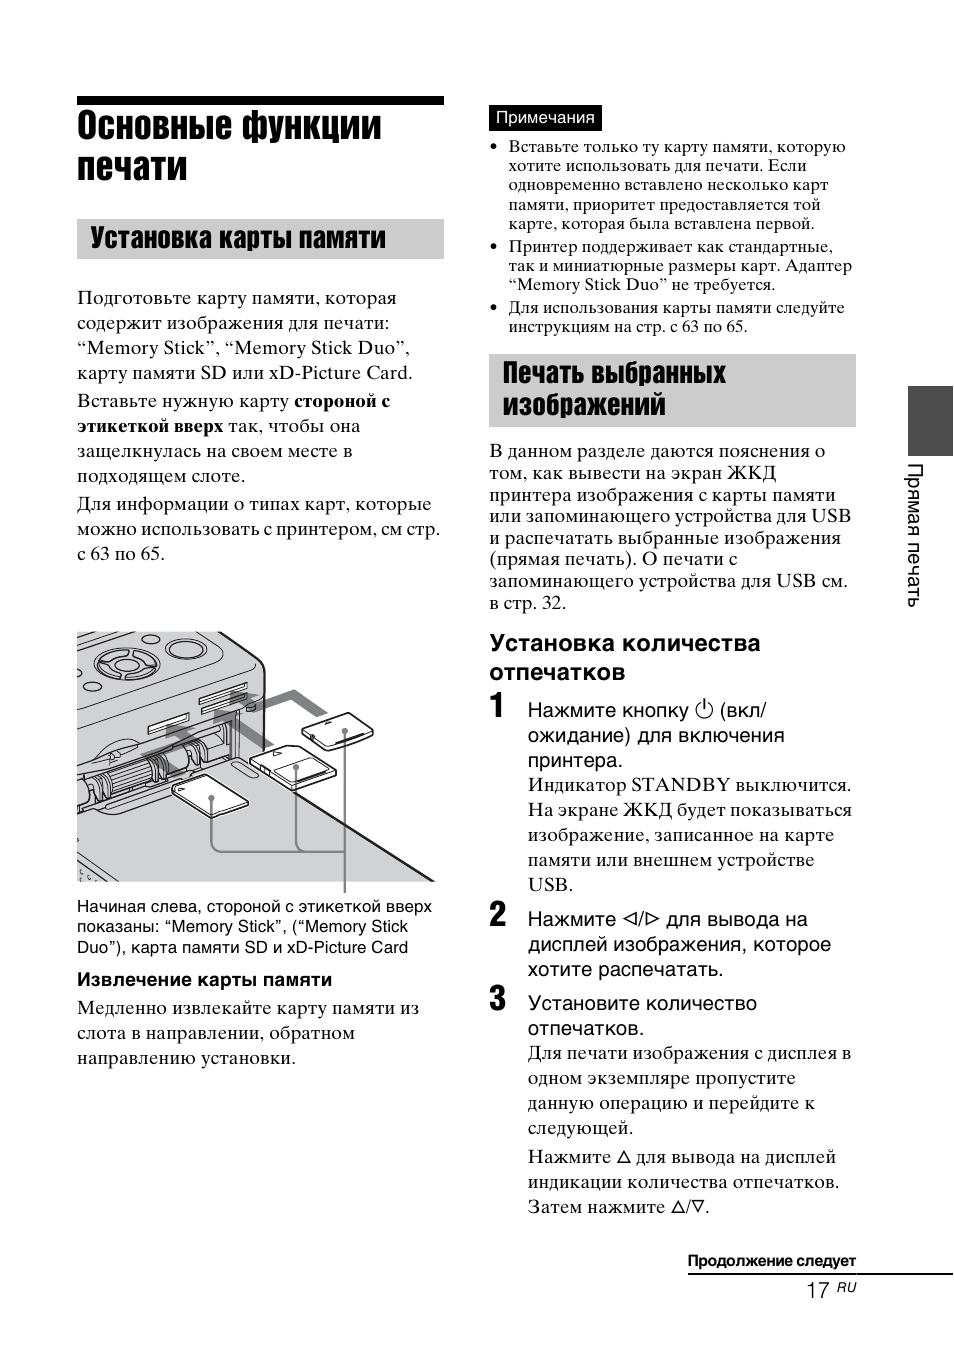 Основные функции печати, Установка карты памяти, Печать выбранных изображений | Инструкция по эксплуатации Sony DPP-FP77 | Страница 17 / 72